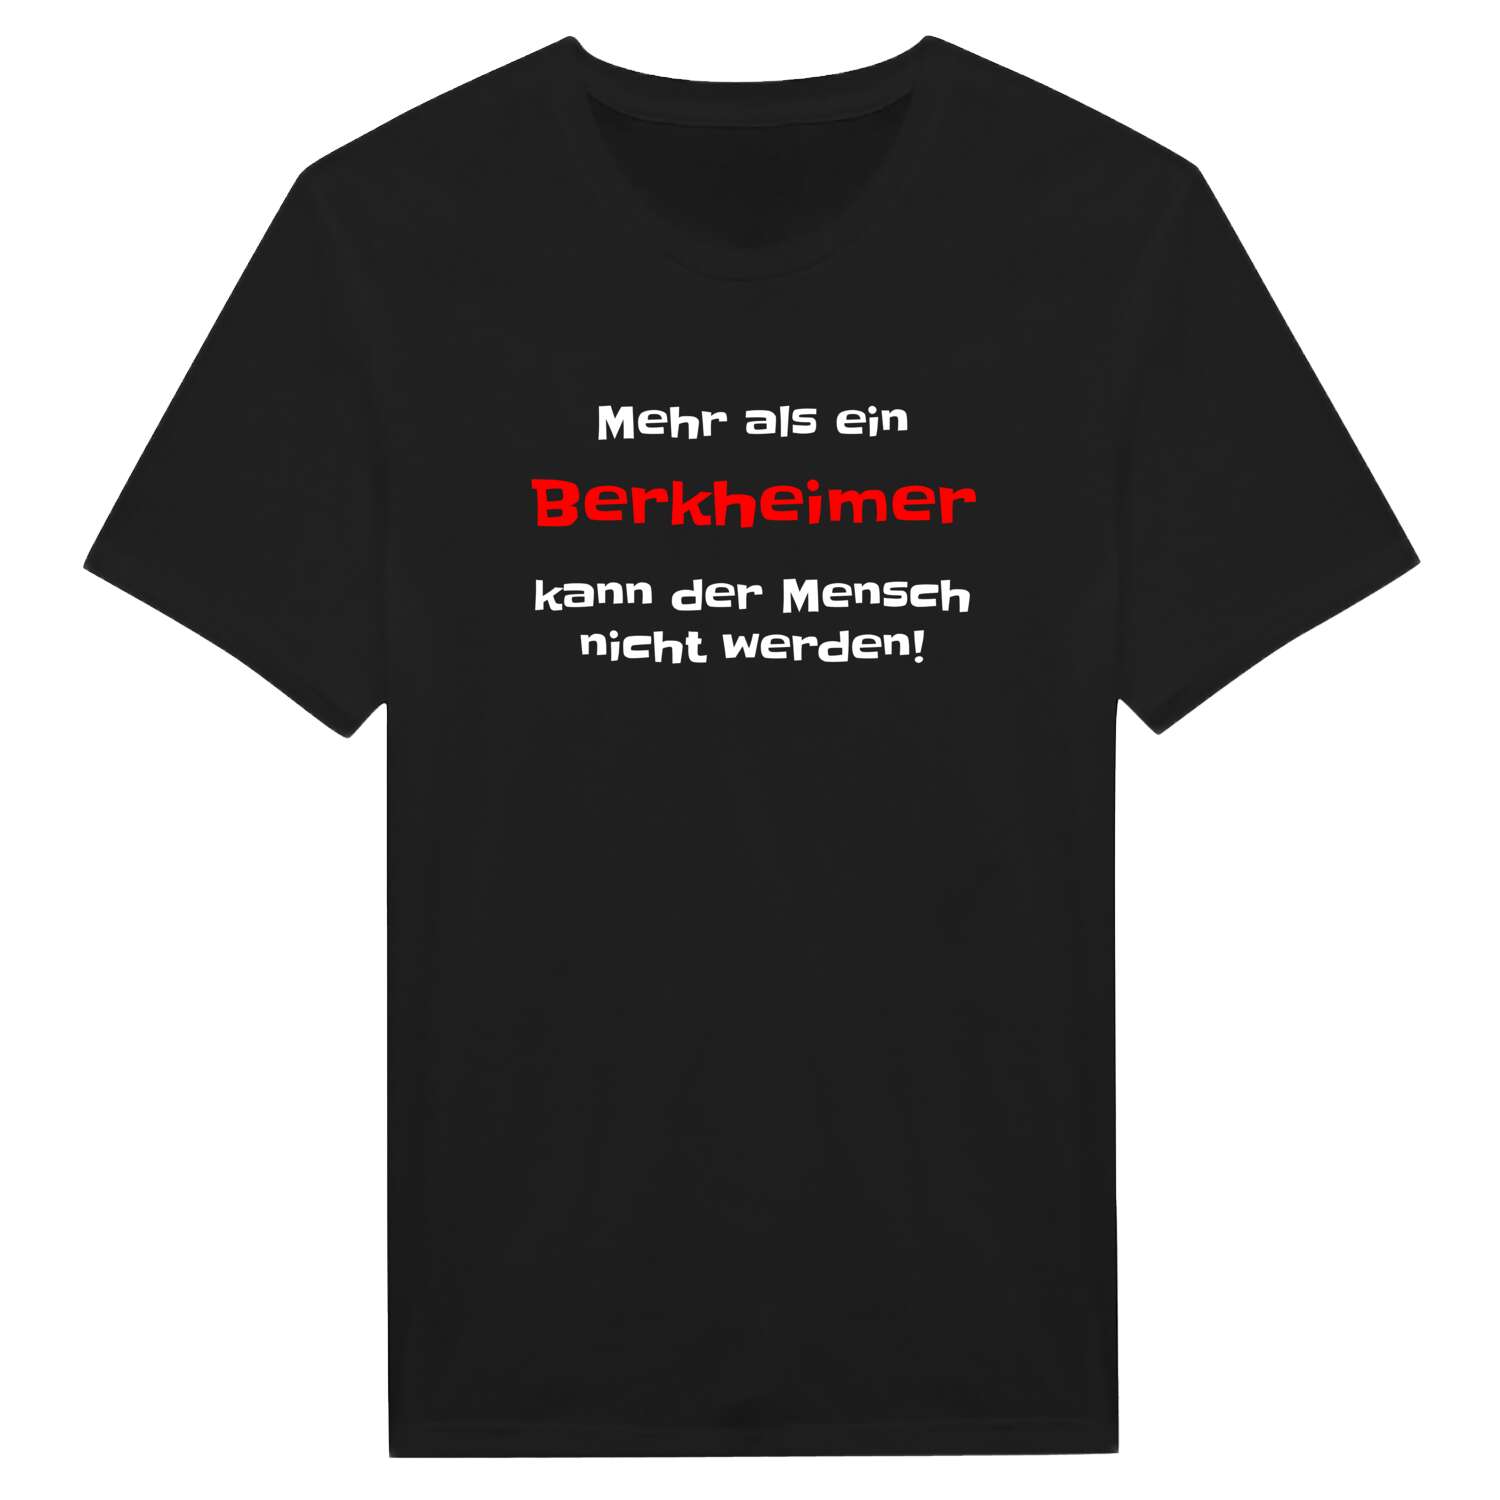 Berkheim T-Shirt »Mehr als ein«